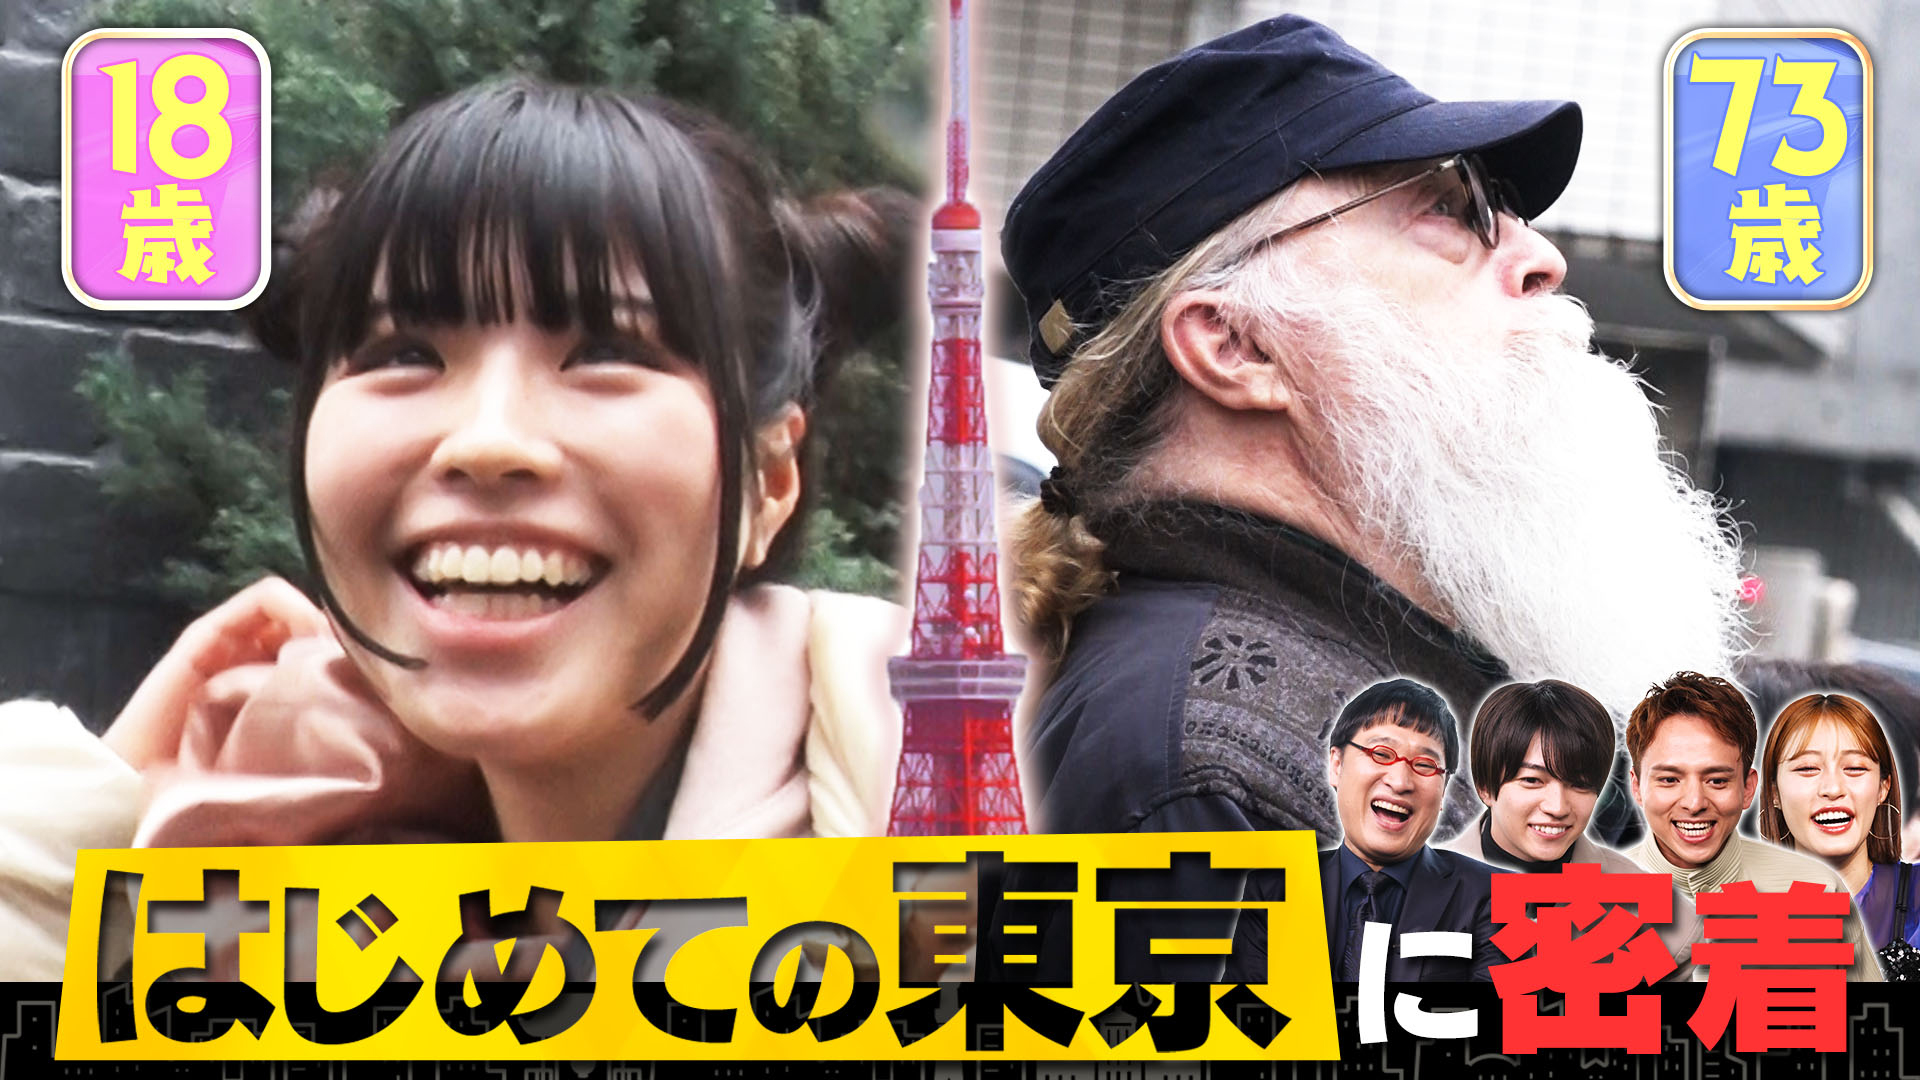 無料テレビではじめて東京物語を視聴する